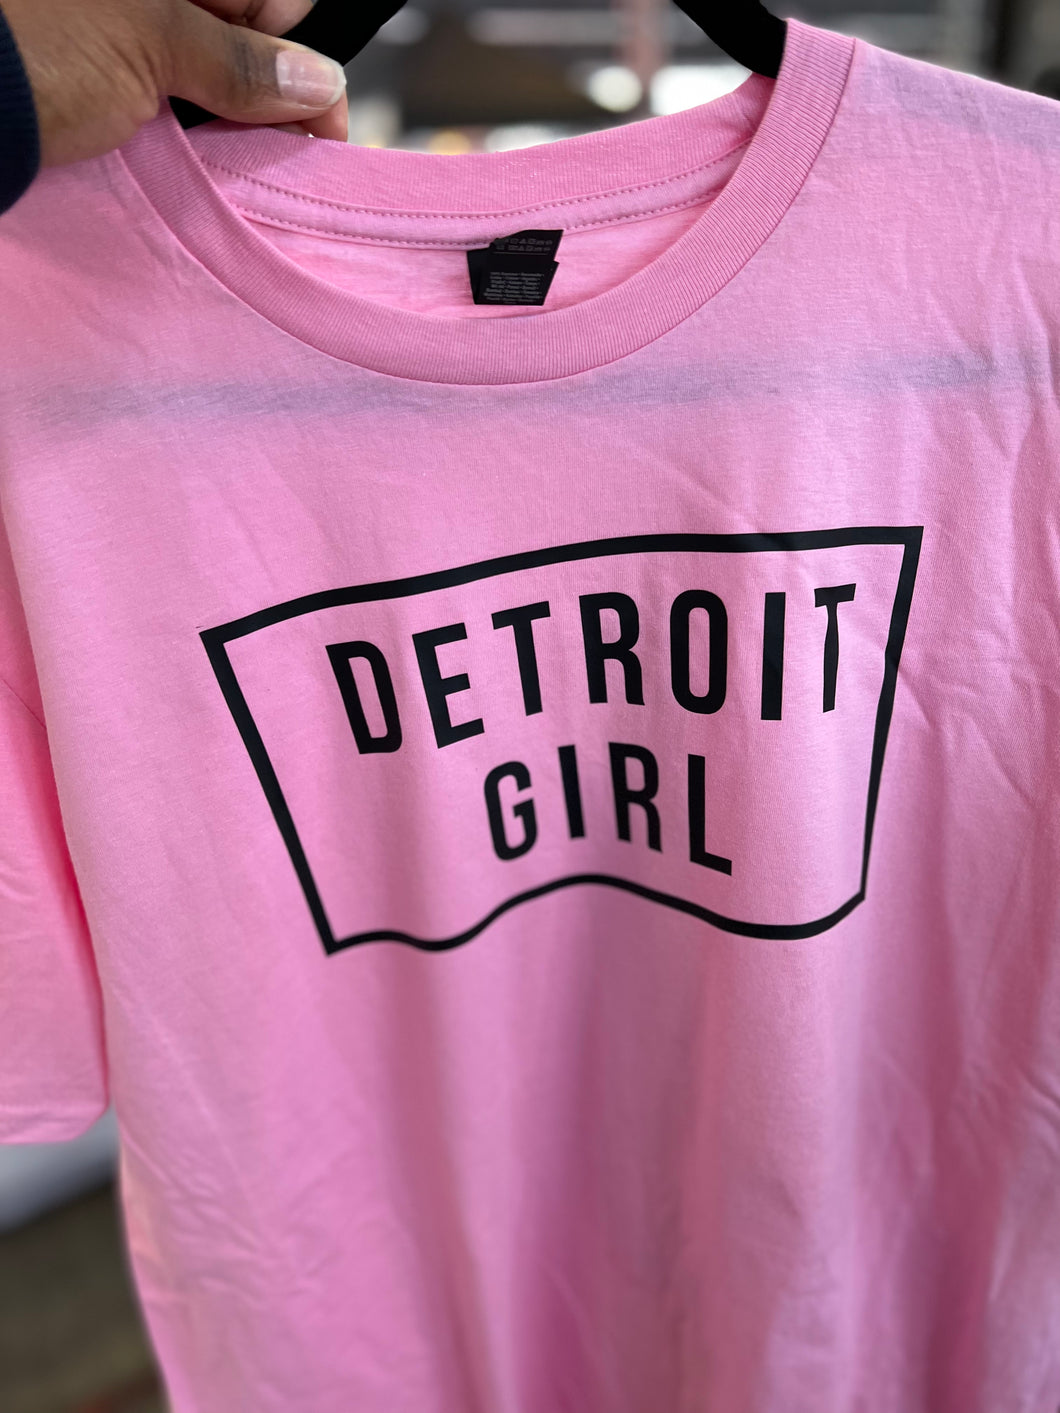 Detroit girl adult